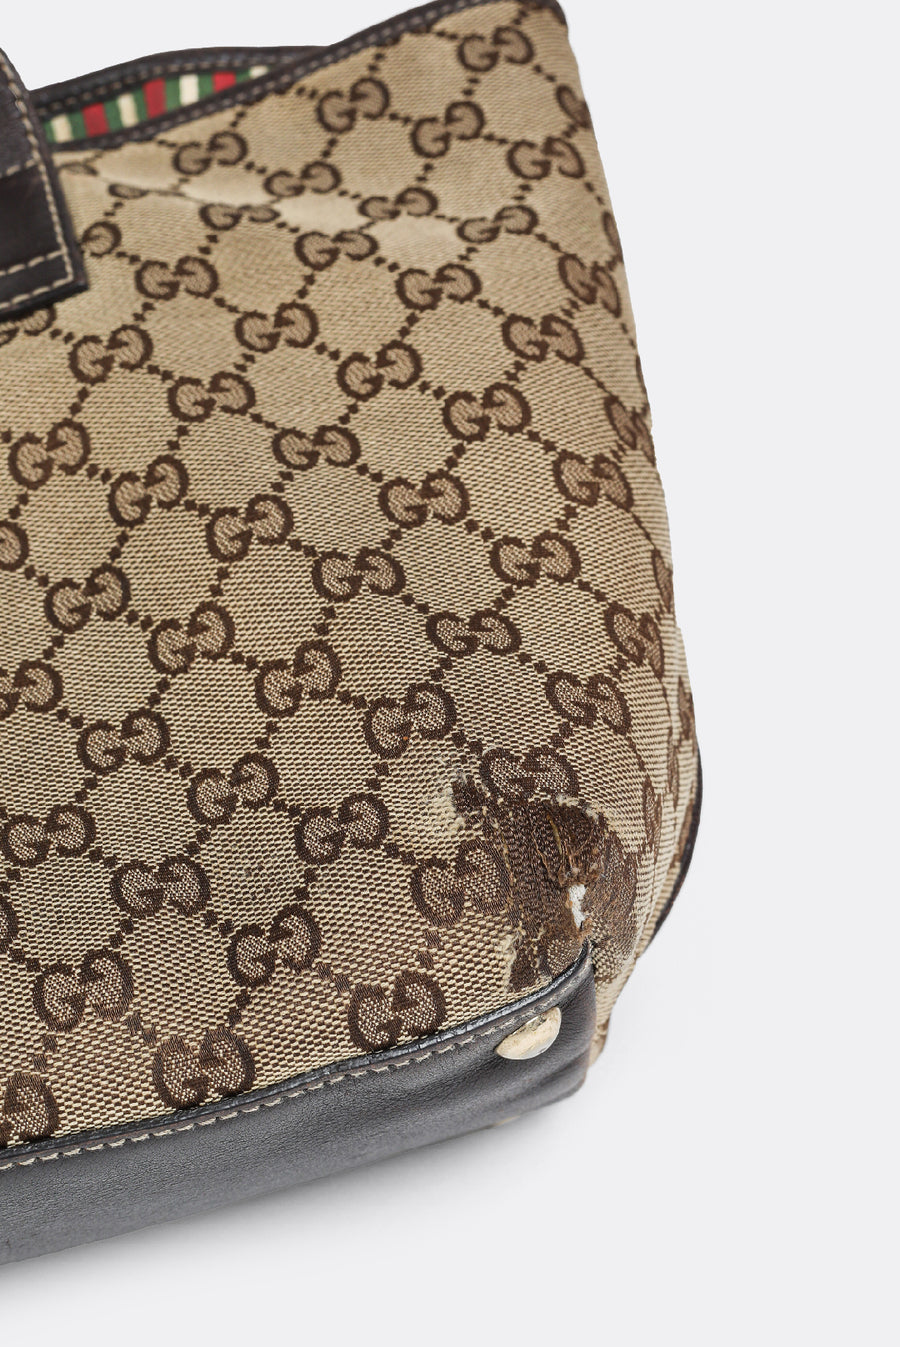 Authentic & Rare Vintage Gucci Purse♥️ | Vintage gucci purse, Gucci purse, Vintage  gucci